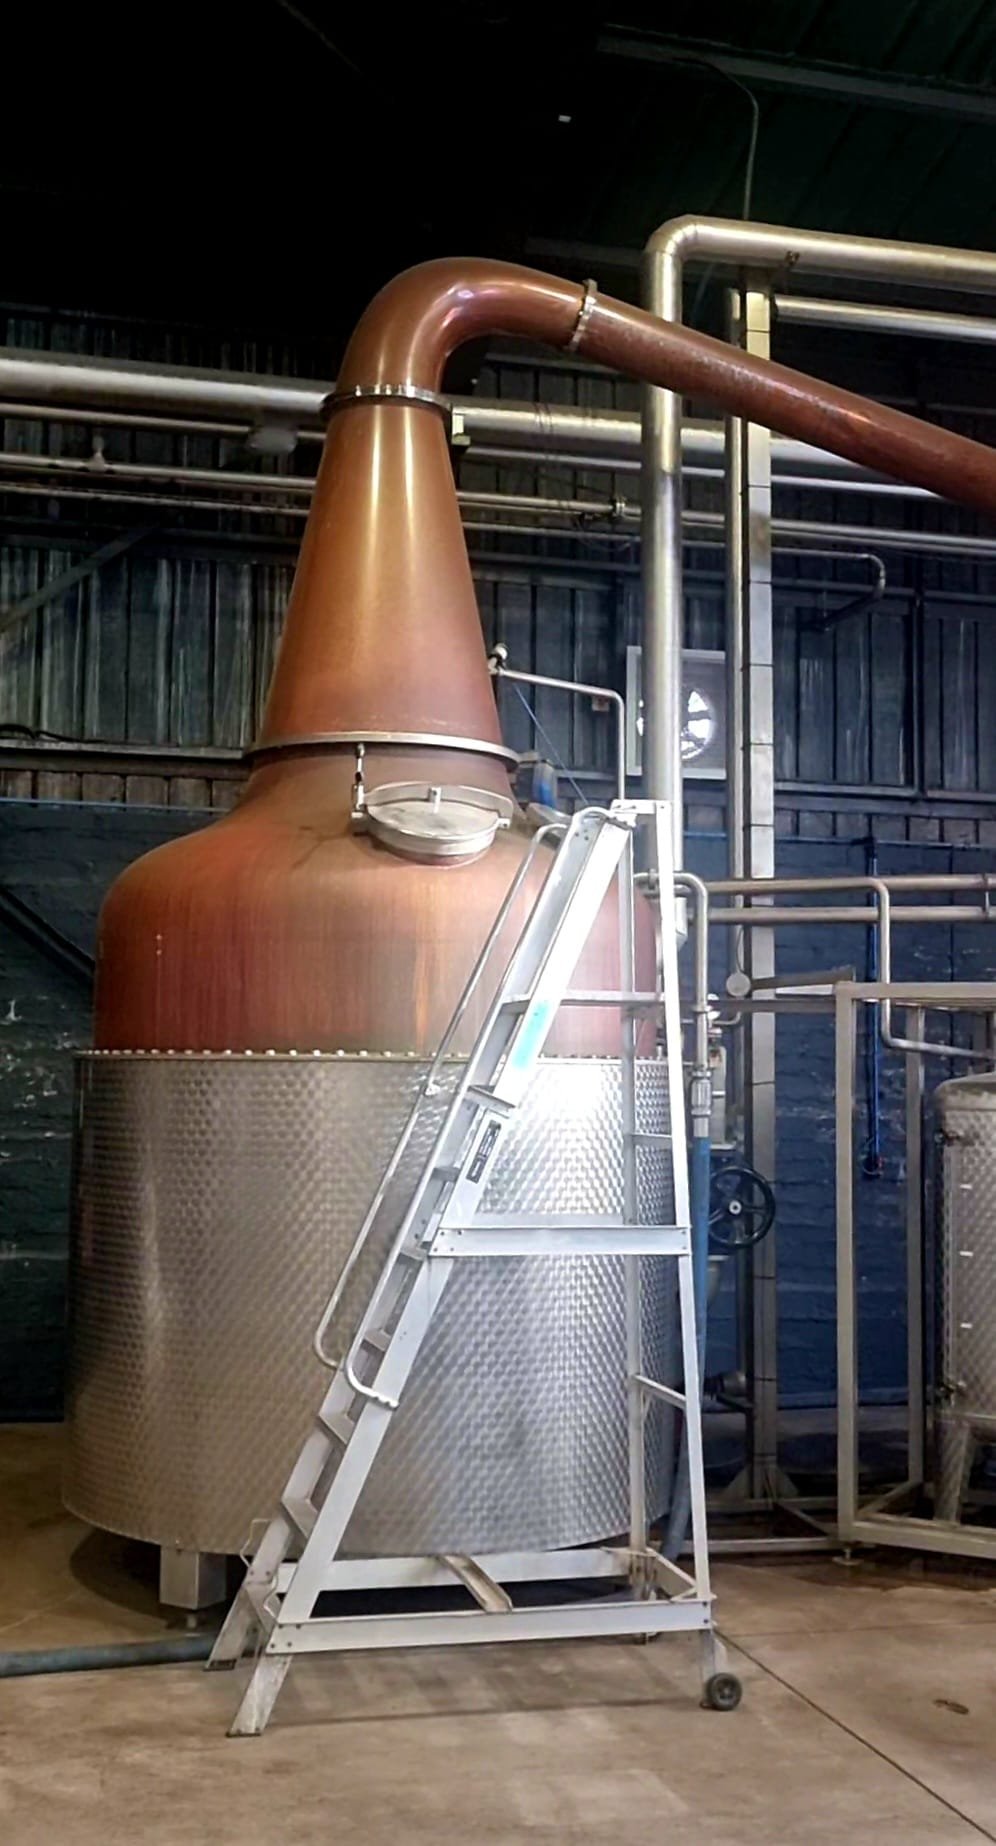 arbikie distillery 2.jpg